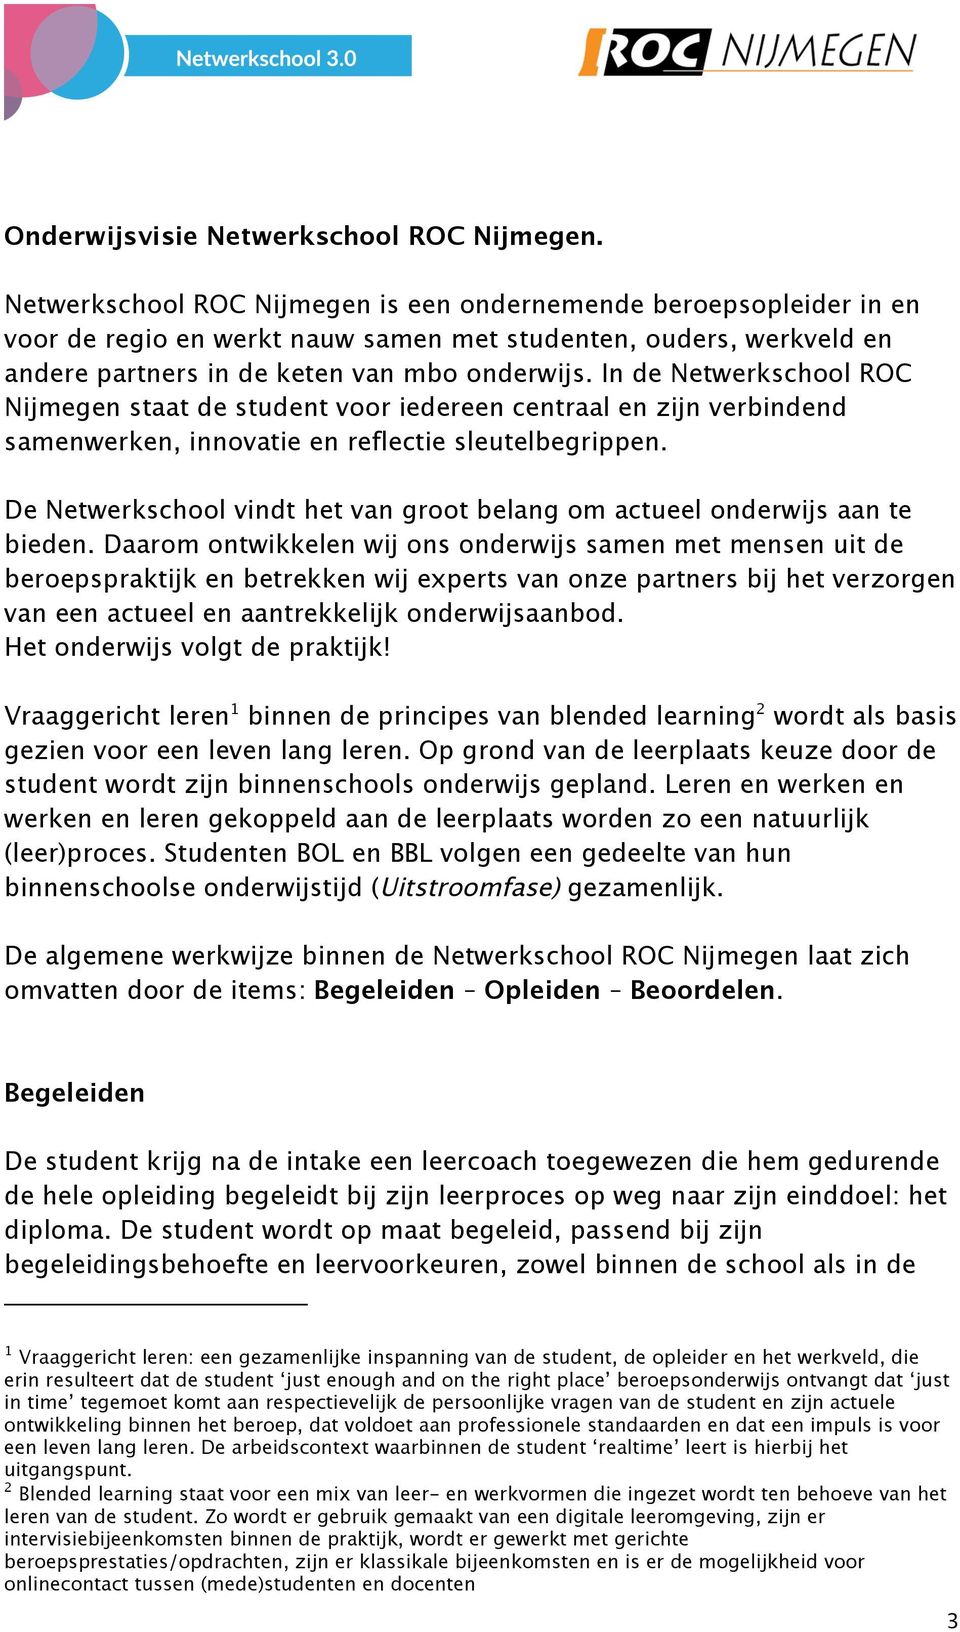 In de Netwerkschool ROC Nijmegen staat de student voor iedereen centraal en zijn verbindend samenwerken, innovatie en reflectie sleutelbegrippen.